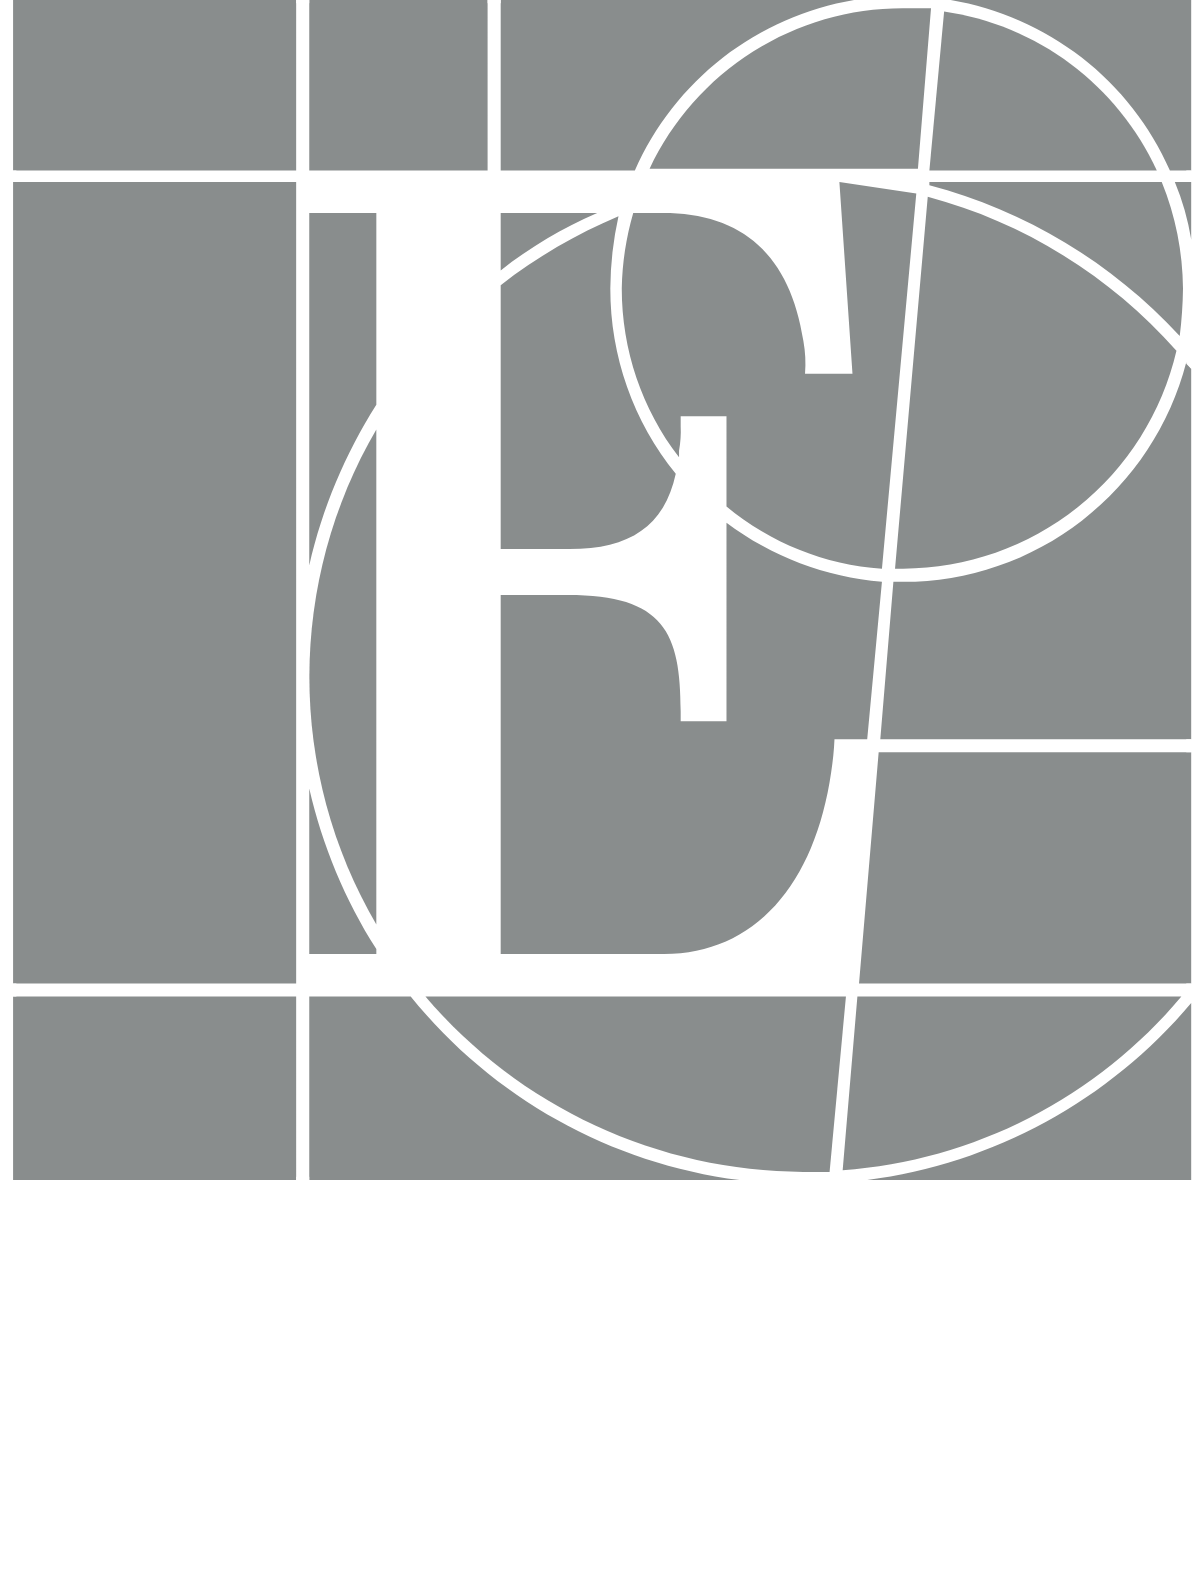 Edwards Lifesciences logo large for dark backgrounds (transparent PNG)